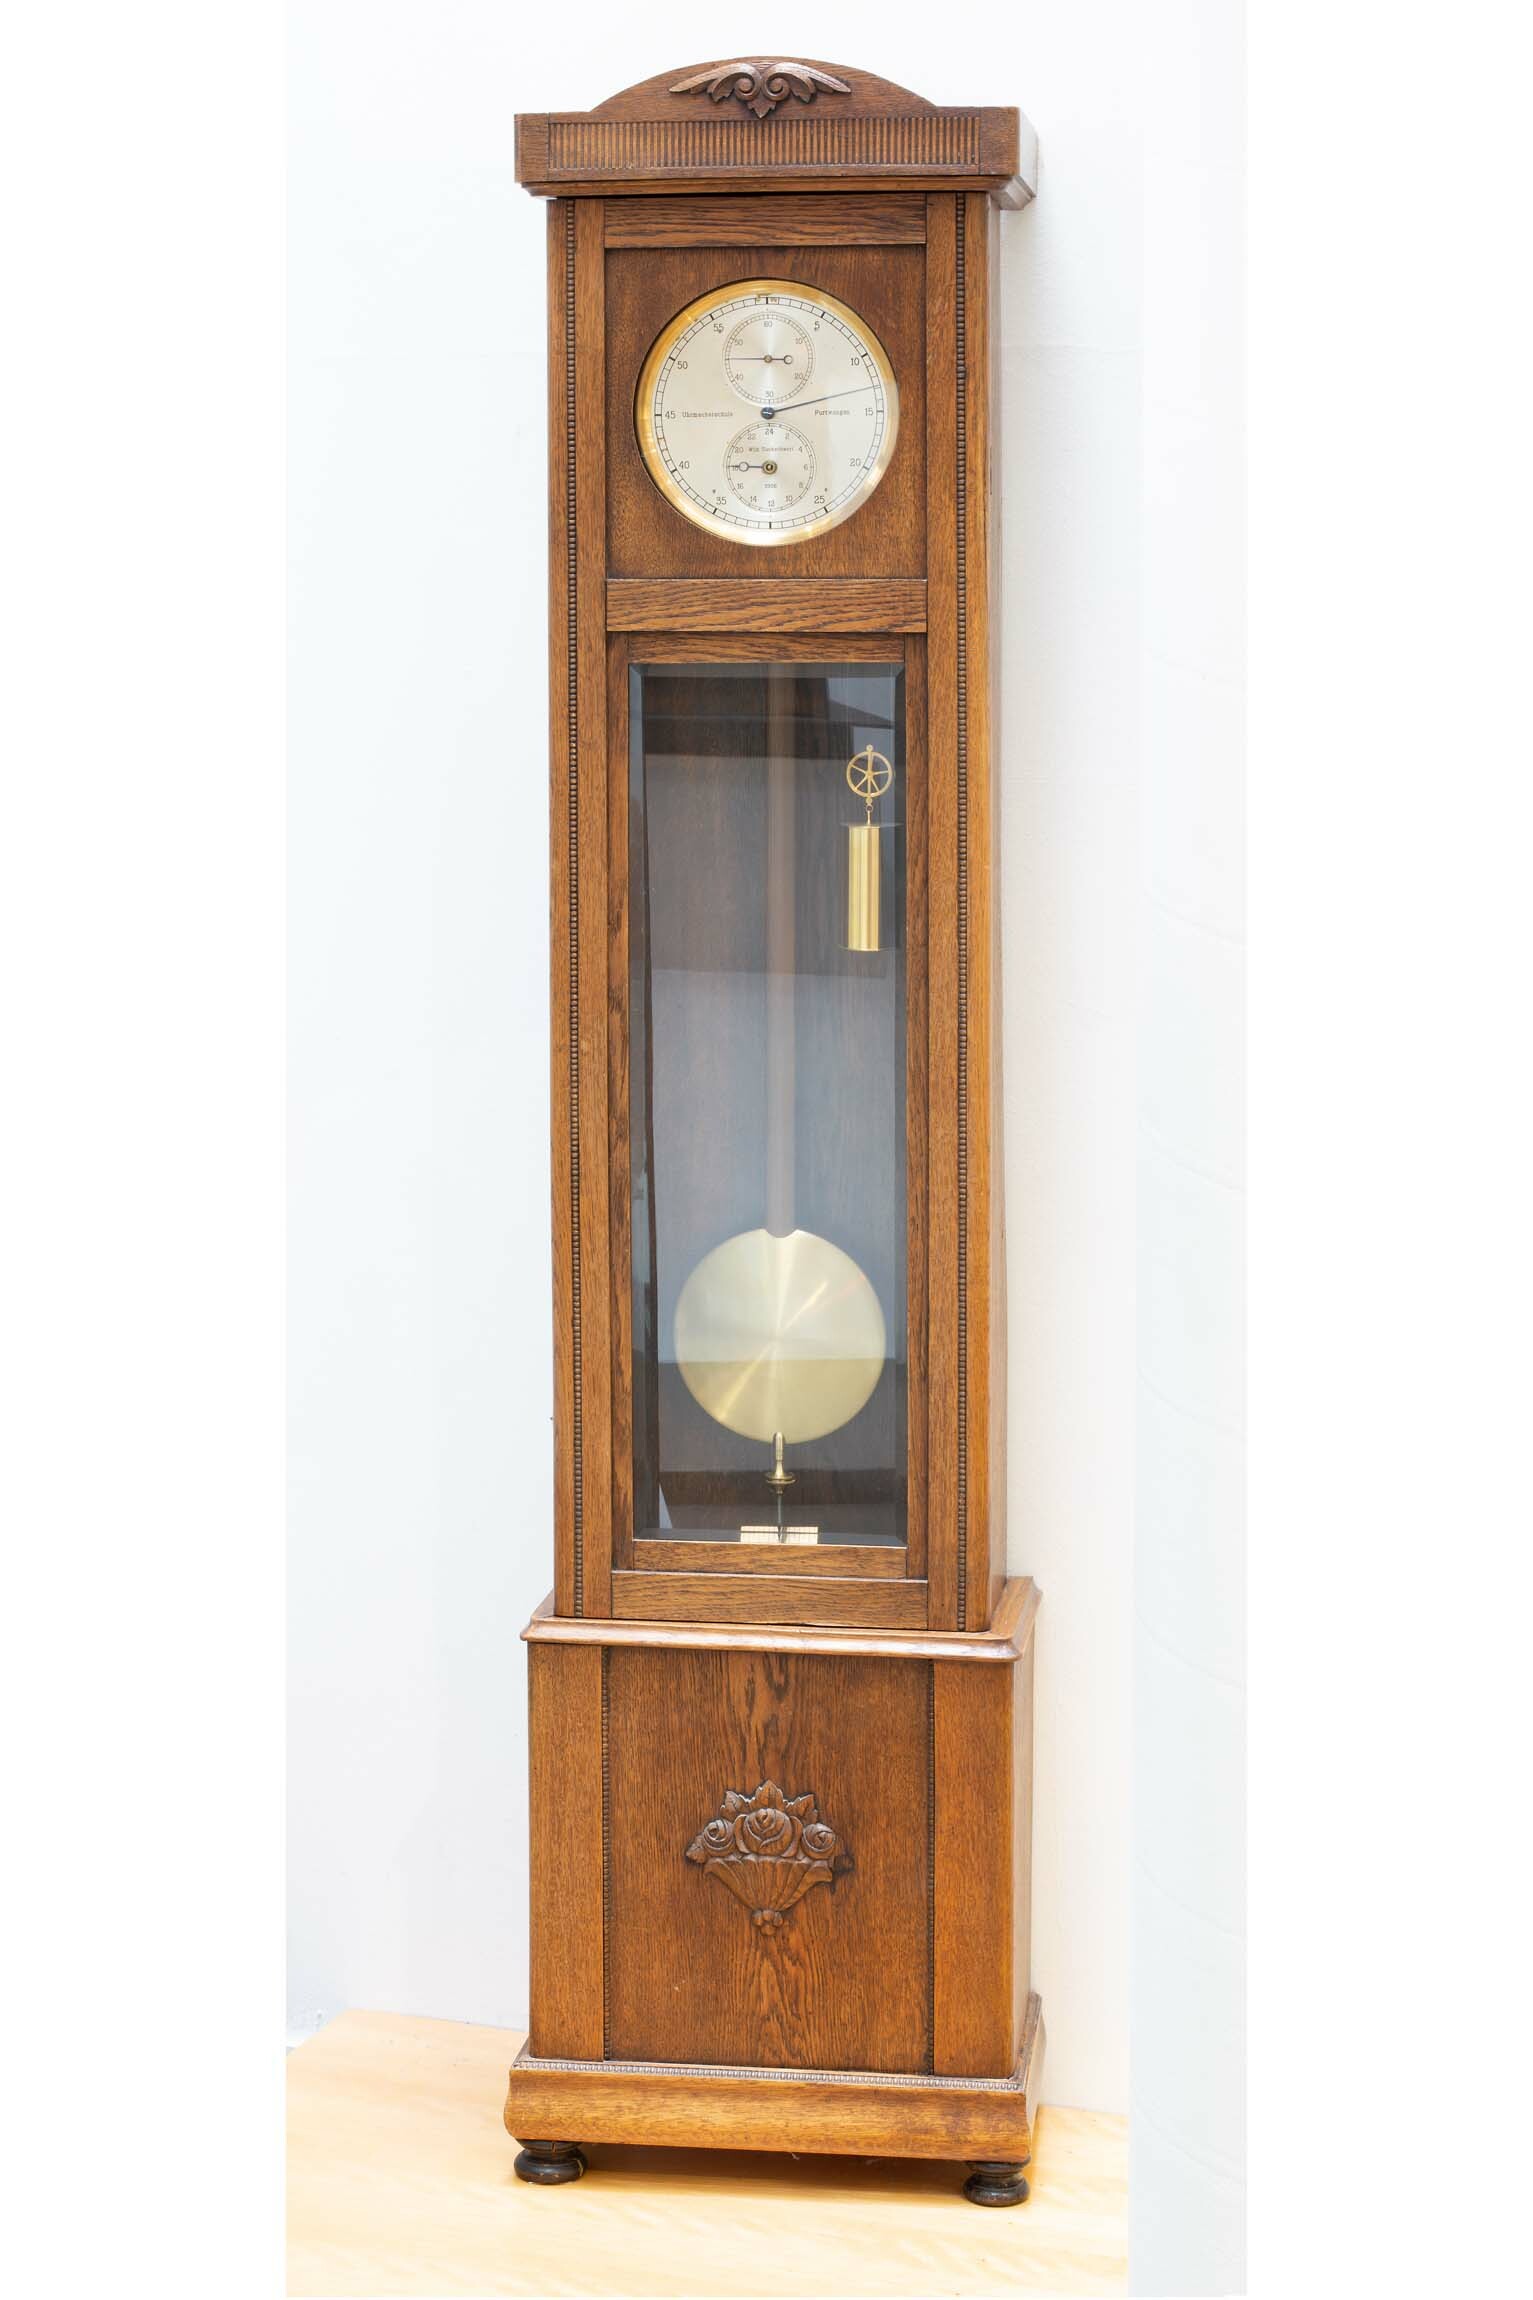 Präzisionspendeluhr, Wilhelm Zuckschwerdt, Uhrmacherschule Furtwangen, 1926 (Deutsches Uhrenmuseum CC BY-SA)